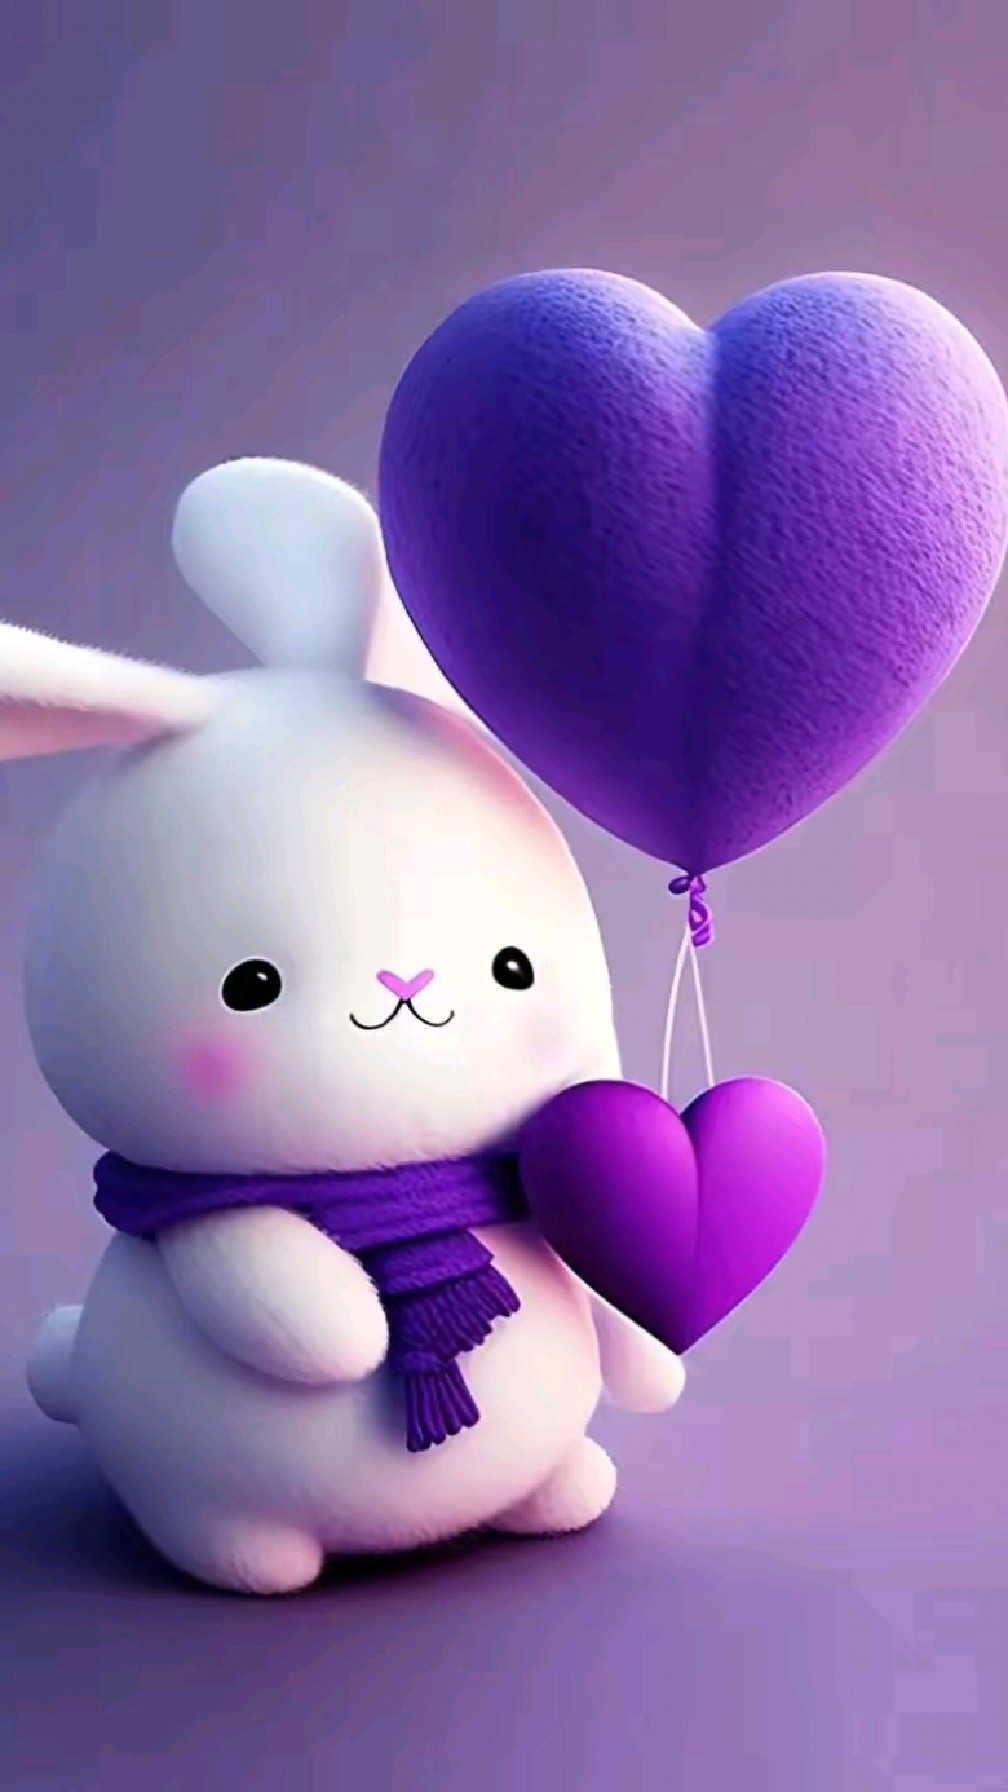 紫色小兔祝您周末愉快,生活惬意